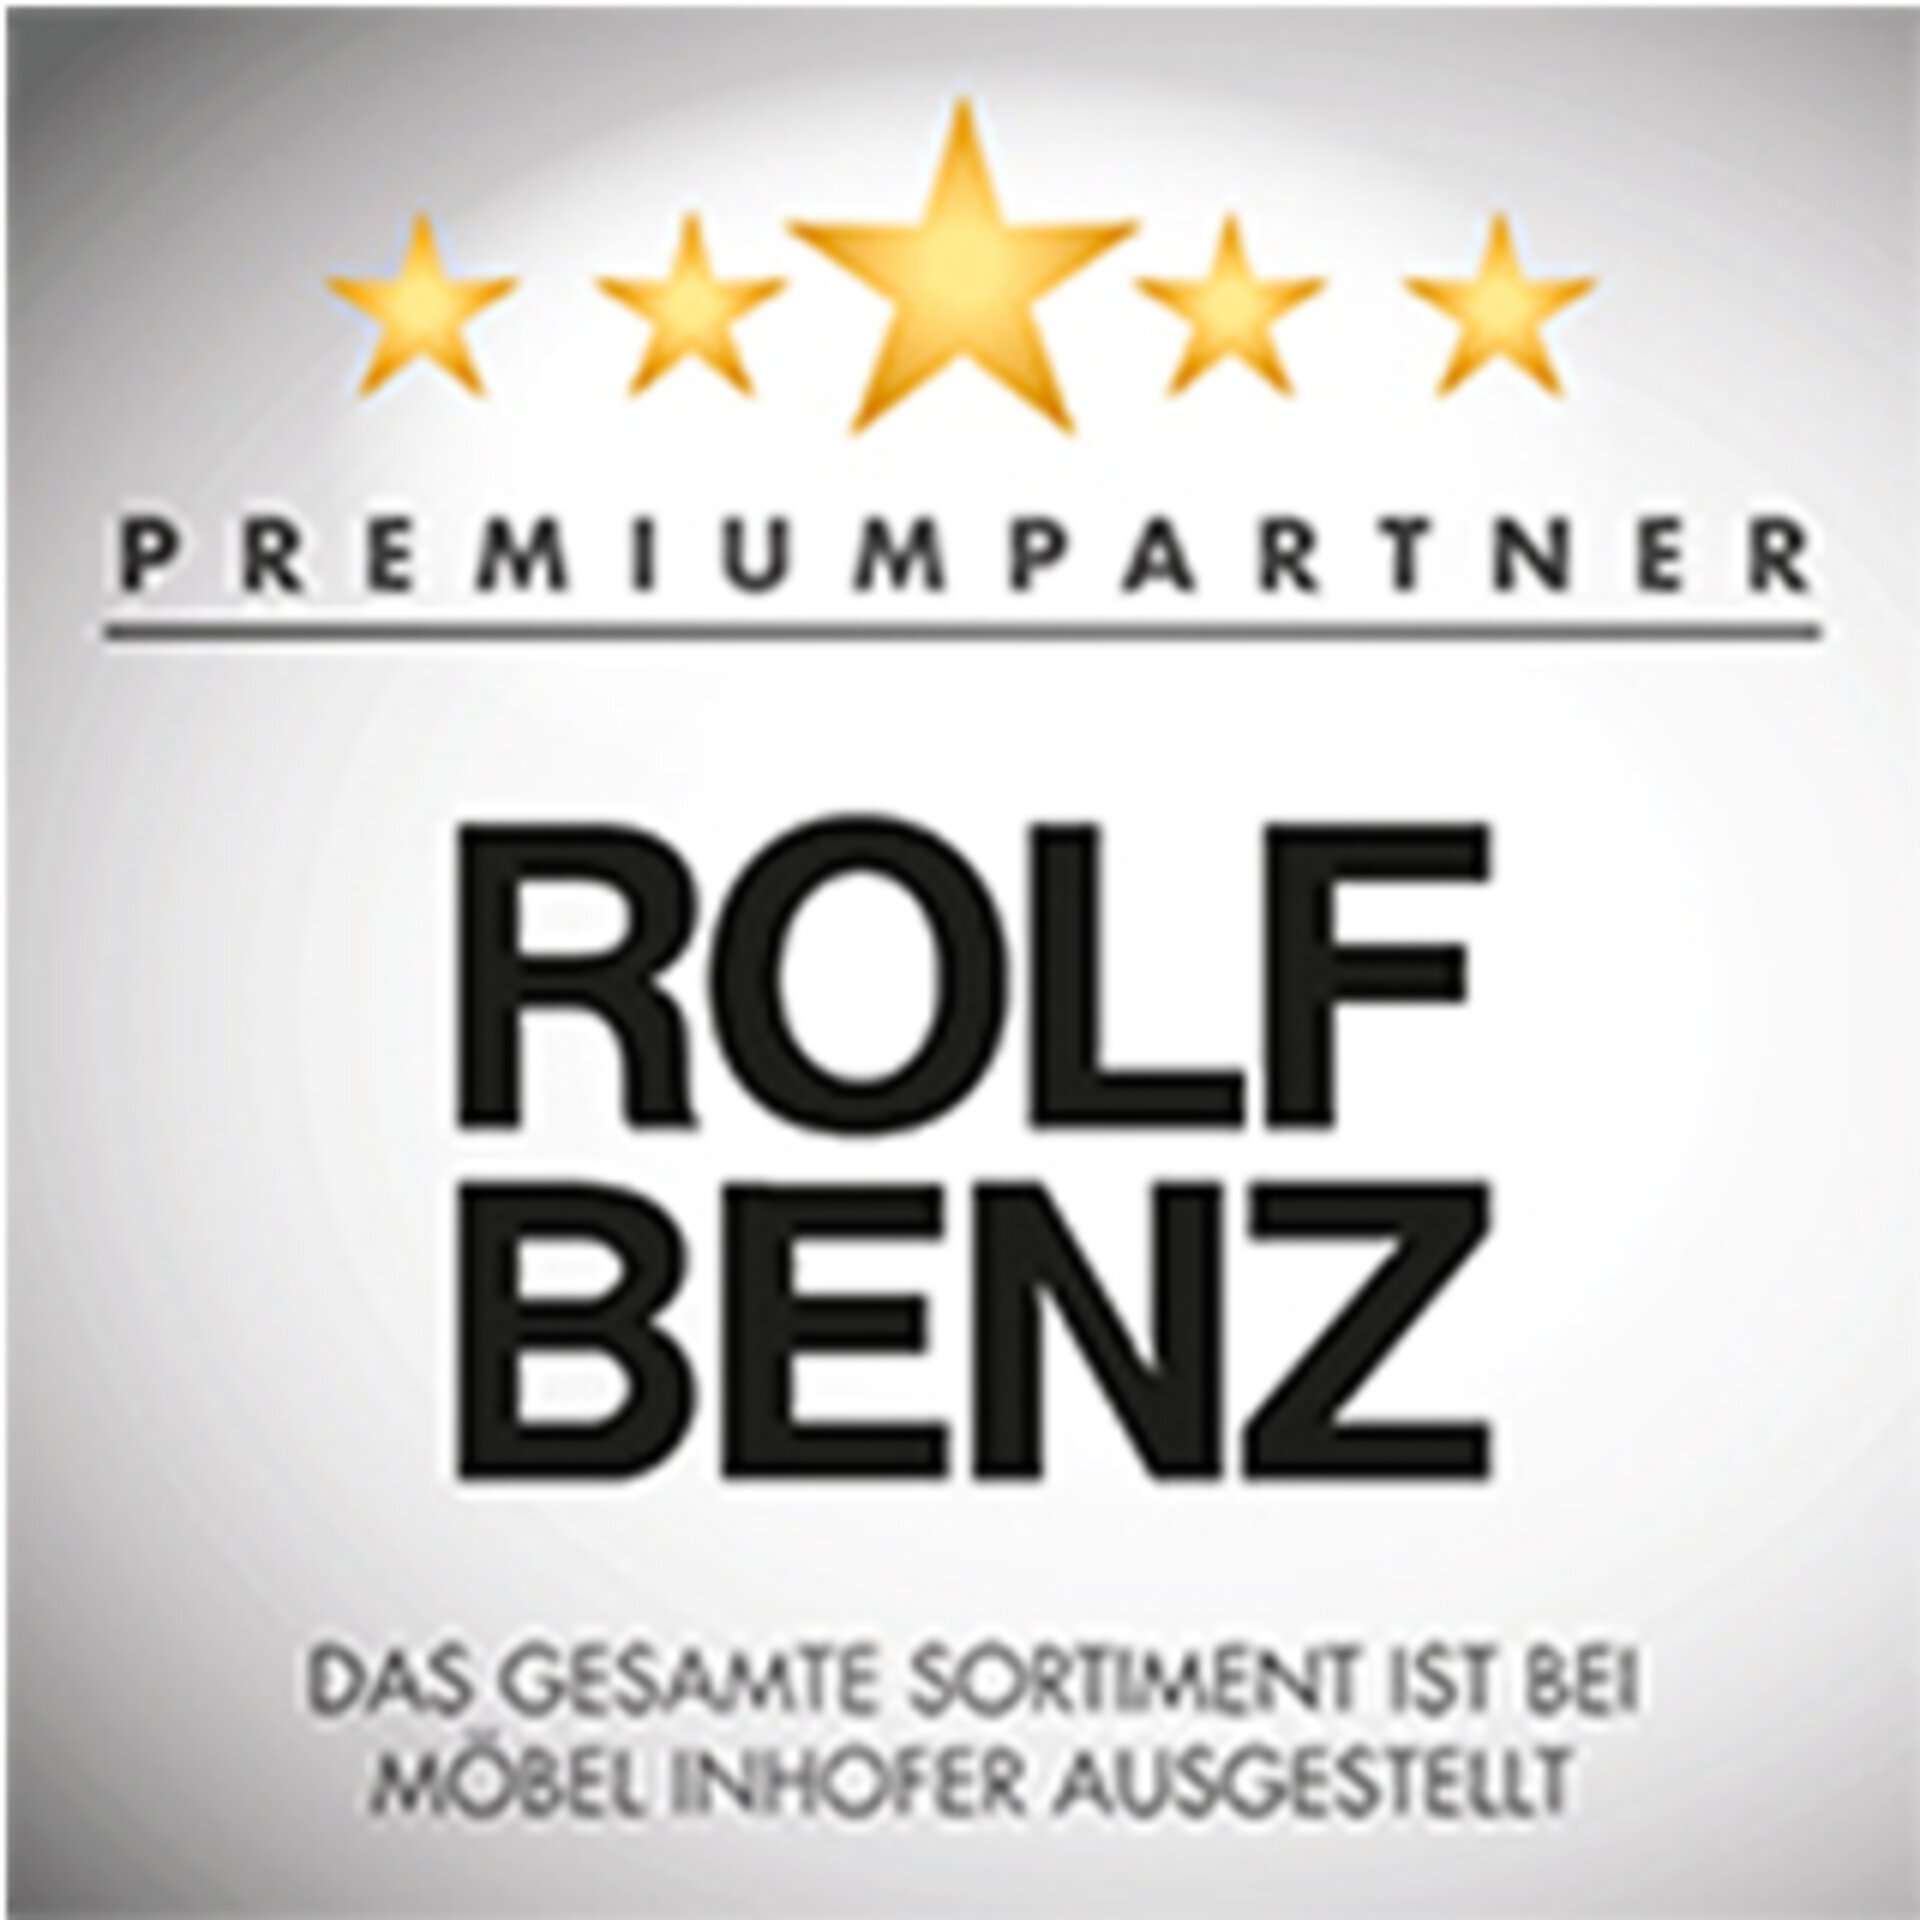 Premiumpartner ROLF BENZ - das gesamte Sortiment ist bei Möbel Inhofer ausgestellt